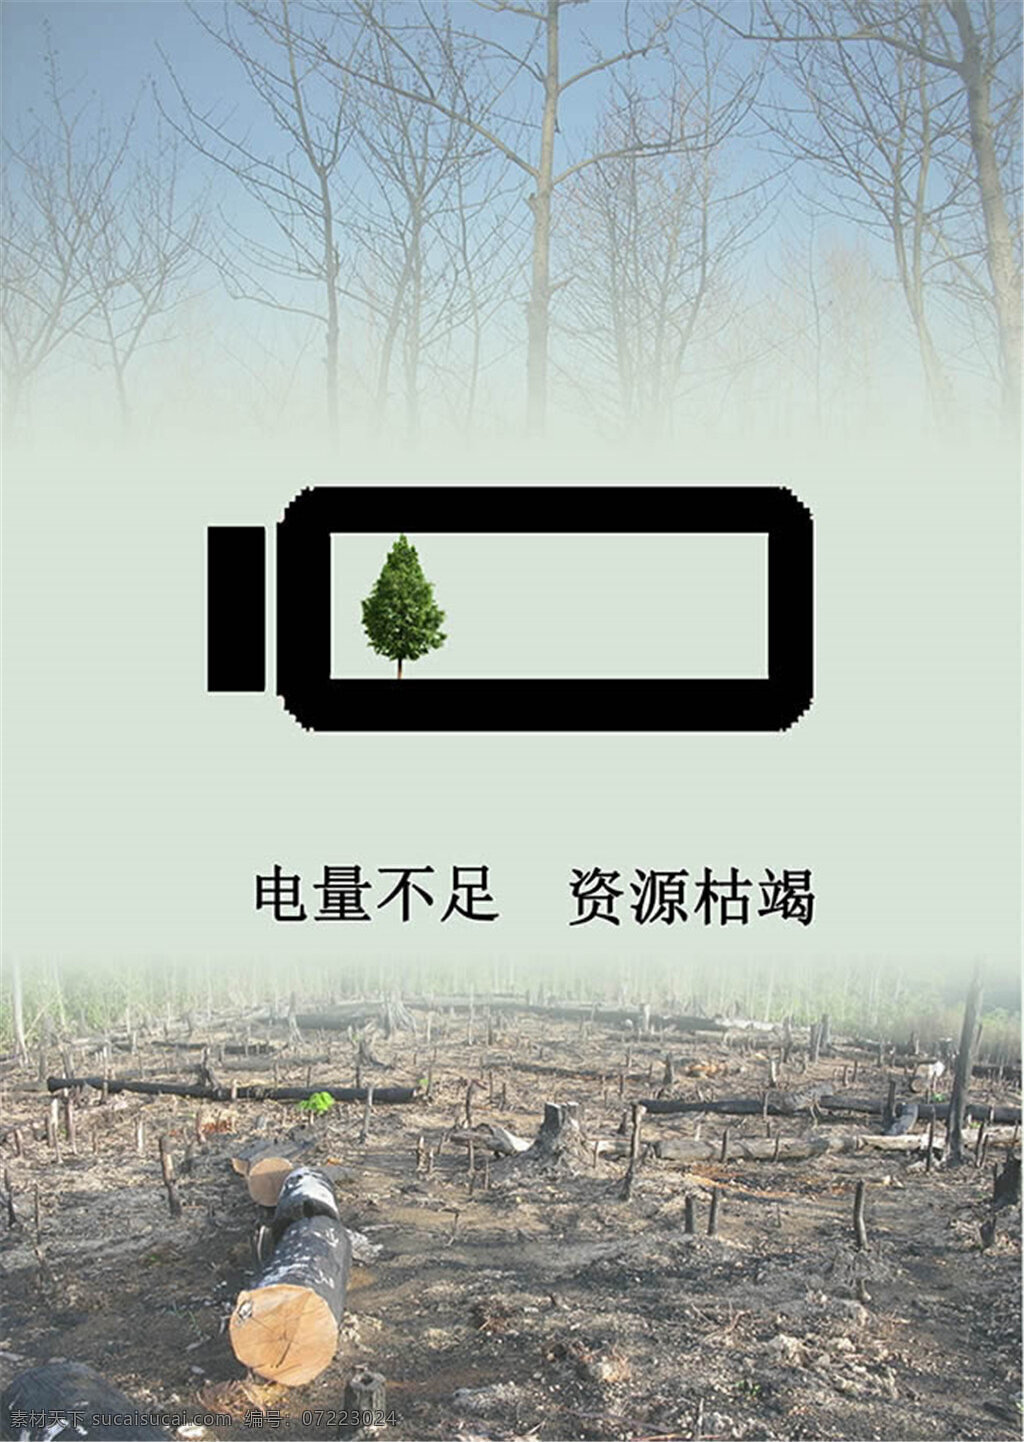 公益广告图片 电量 不足 资源 枯竭 公益 广告 海报 环保 公益海报 森林破坏 资源枯竭 节约 保护环境 健康 电量不足 创意海报设计